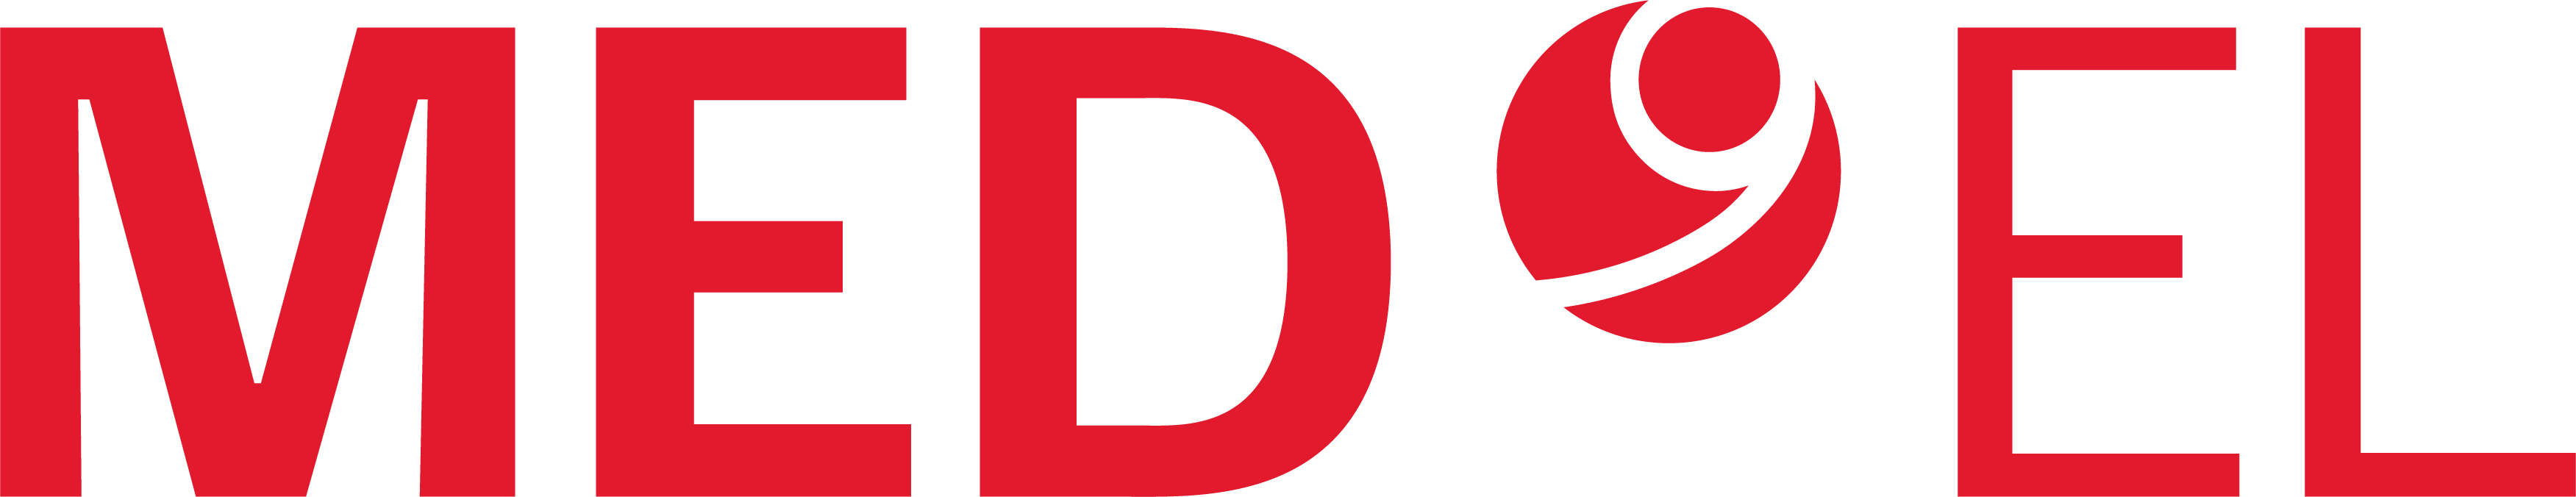 MED-EL logo.